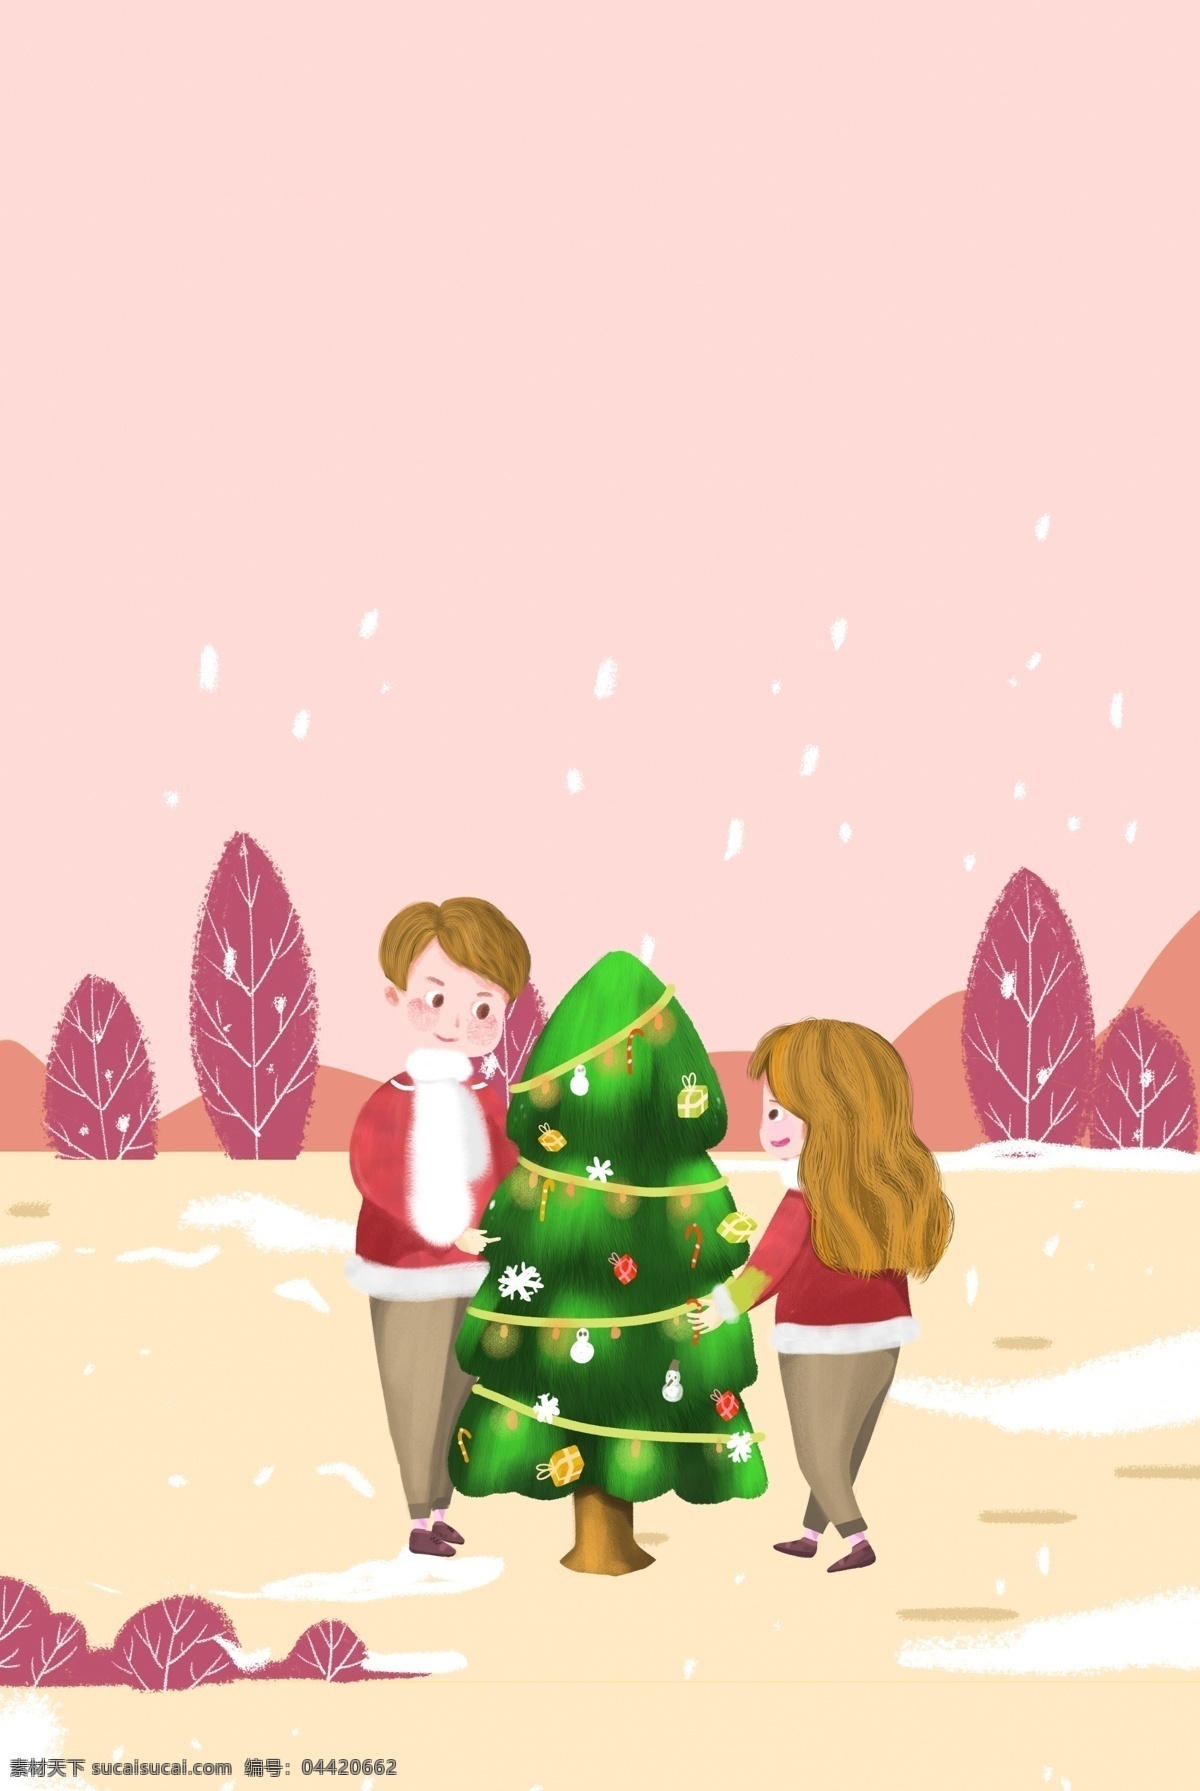 温暖 情侣 共同 度过 圣诞节 促销 海报 服装 圣诞树 植物 插画风 促销海报